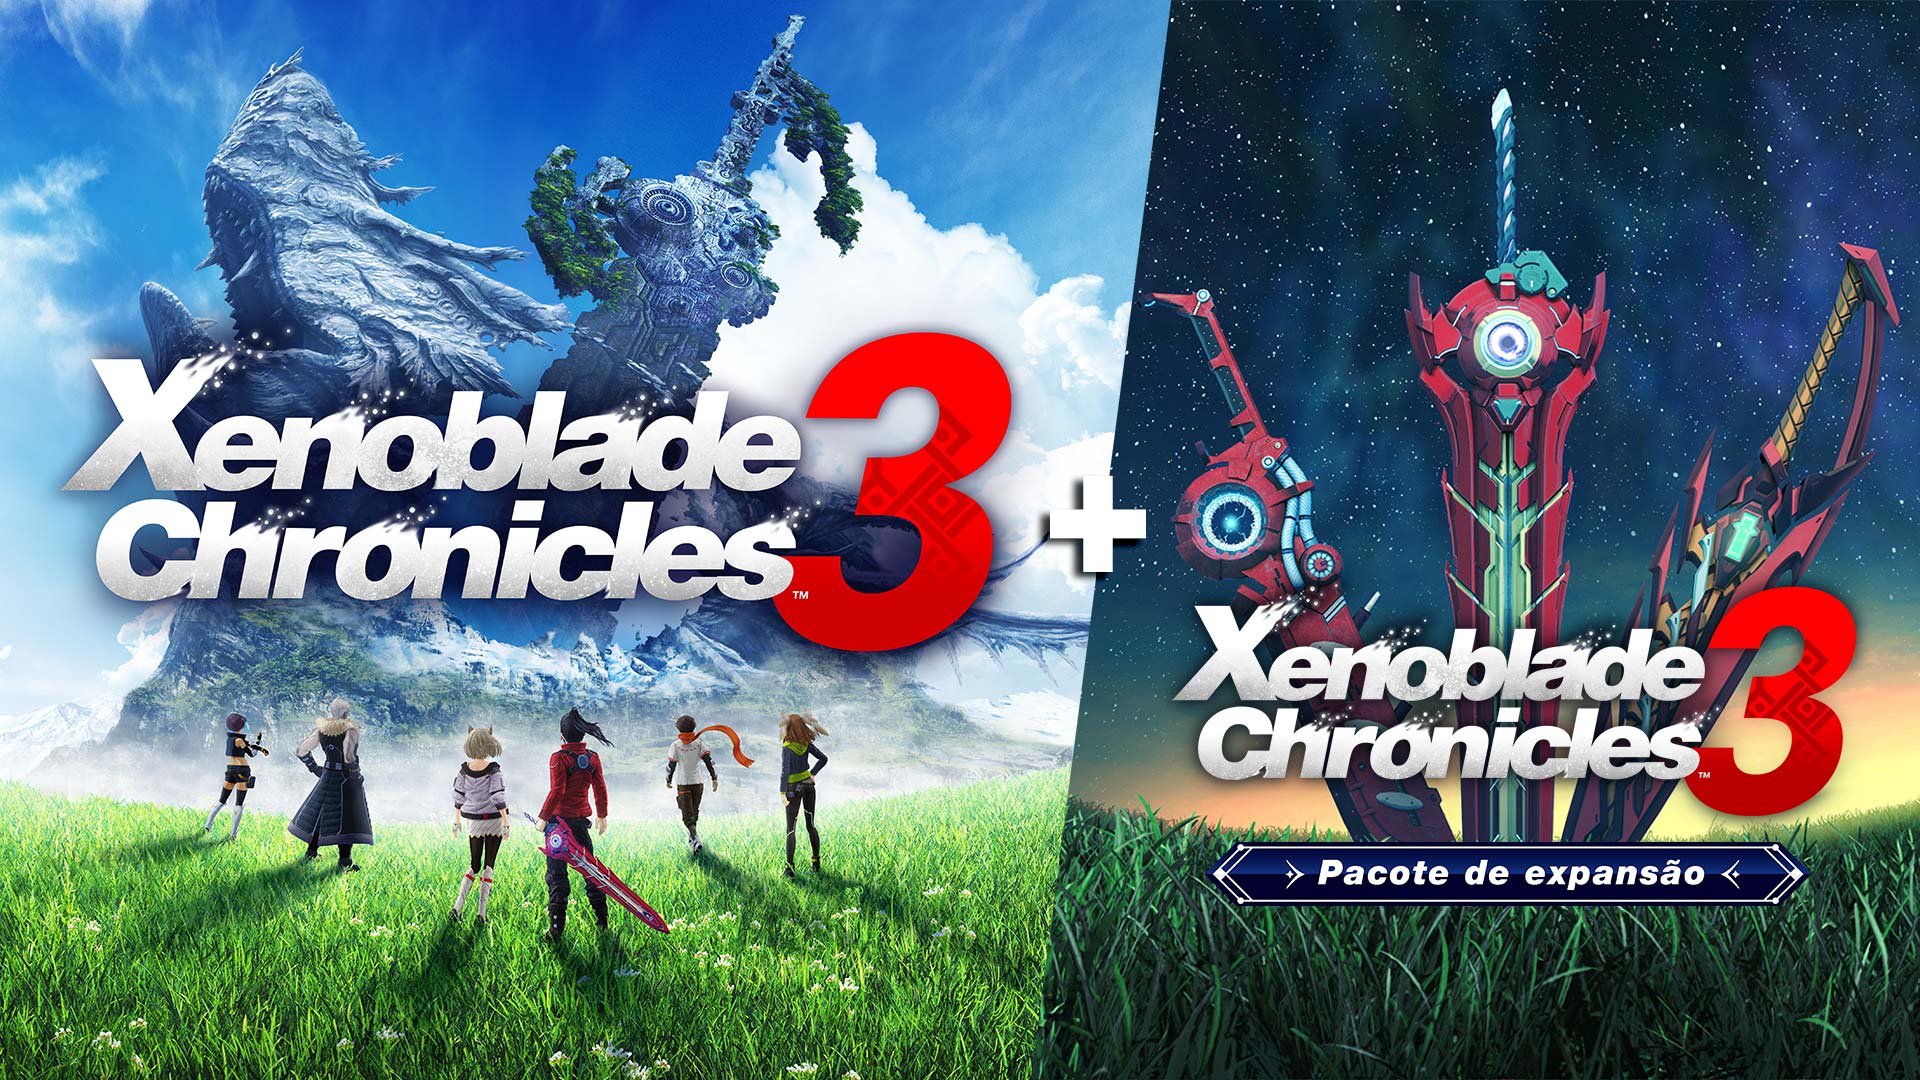 Xenoblade Chronicles™ 3 + Xenoblade Chronicles™ 3 Pacote de expansão